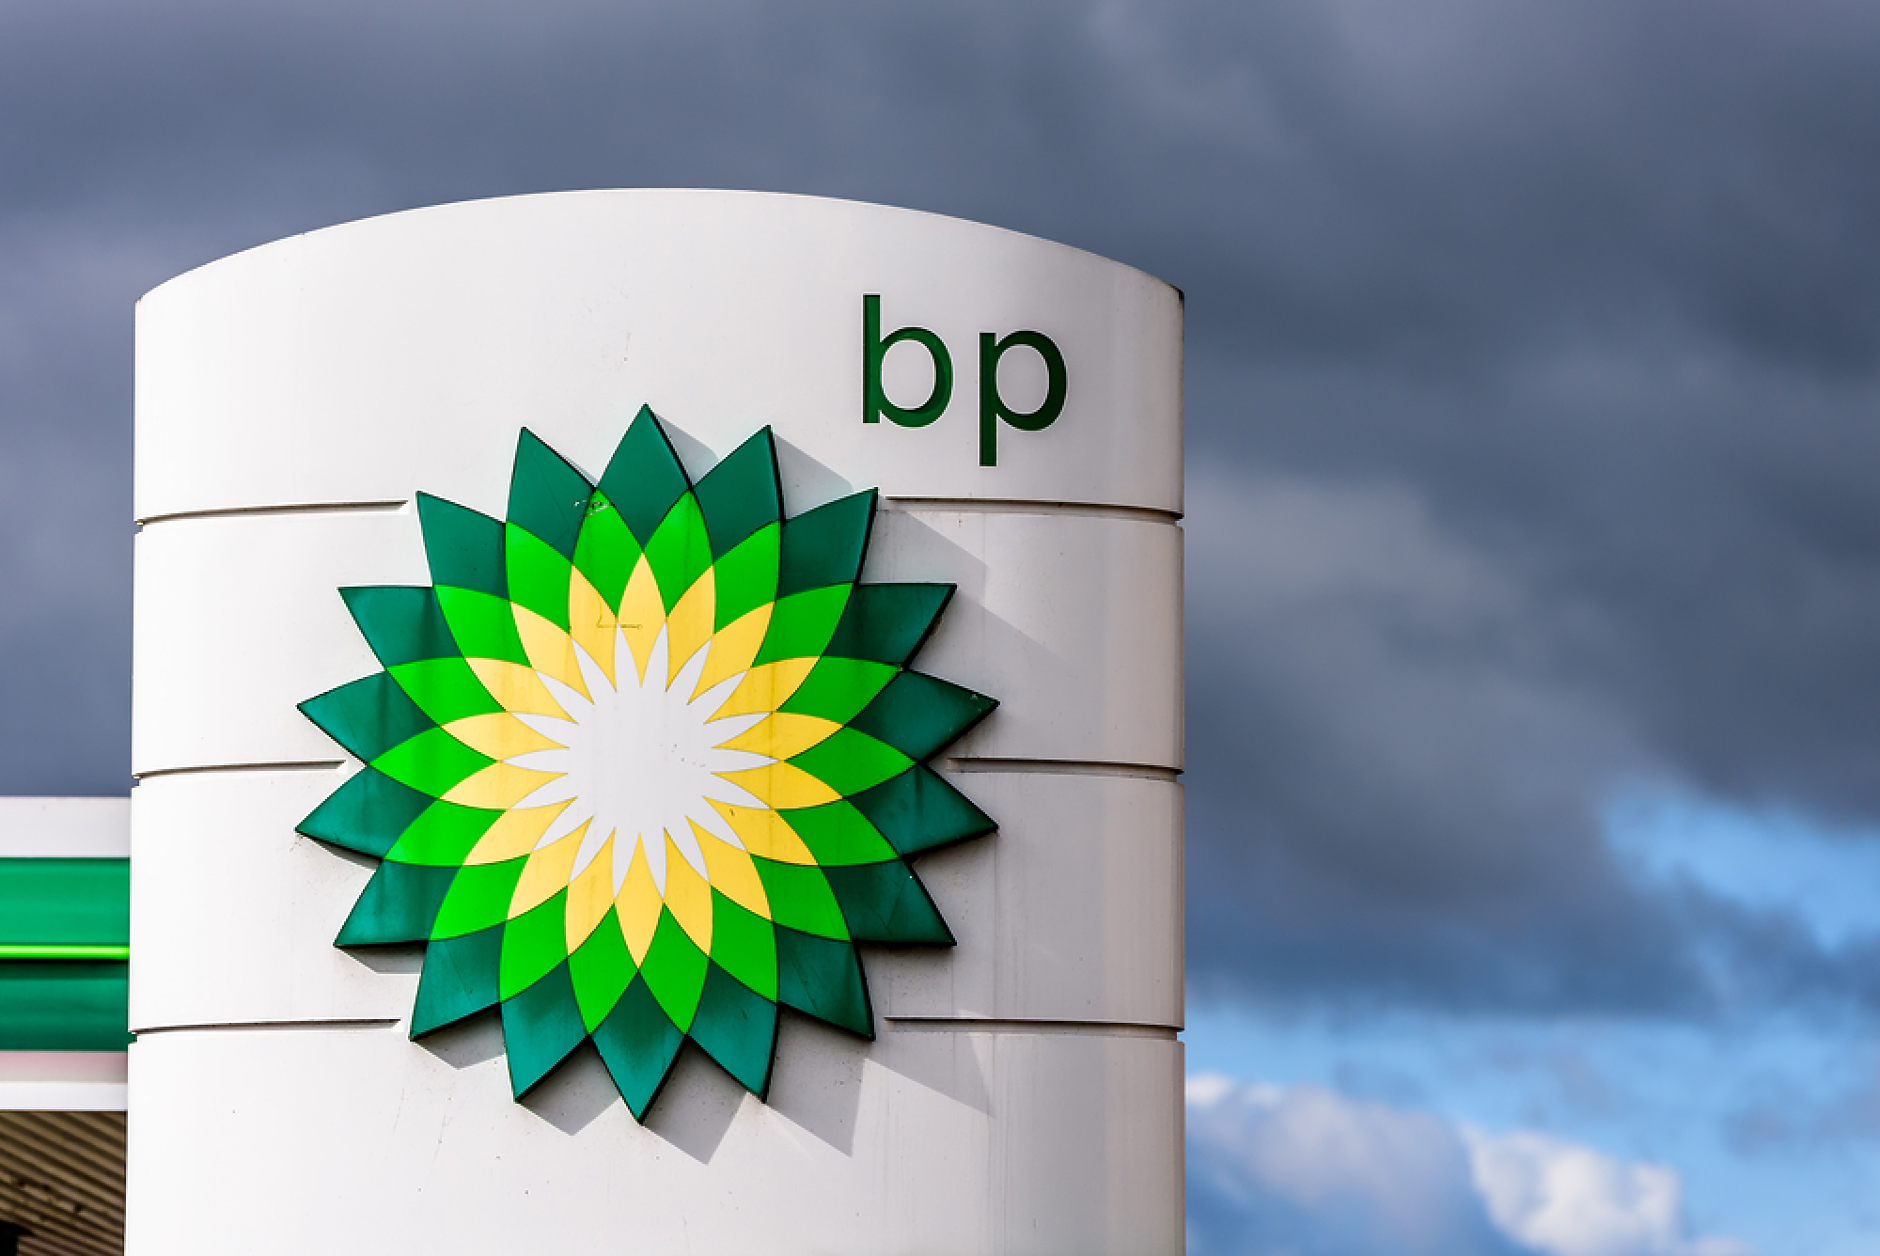 British Petroleum  прогнозира спад на търсенето на петрол и газ